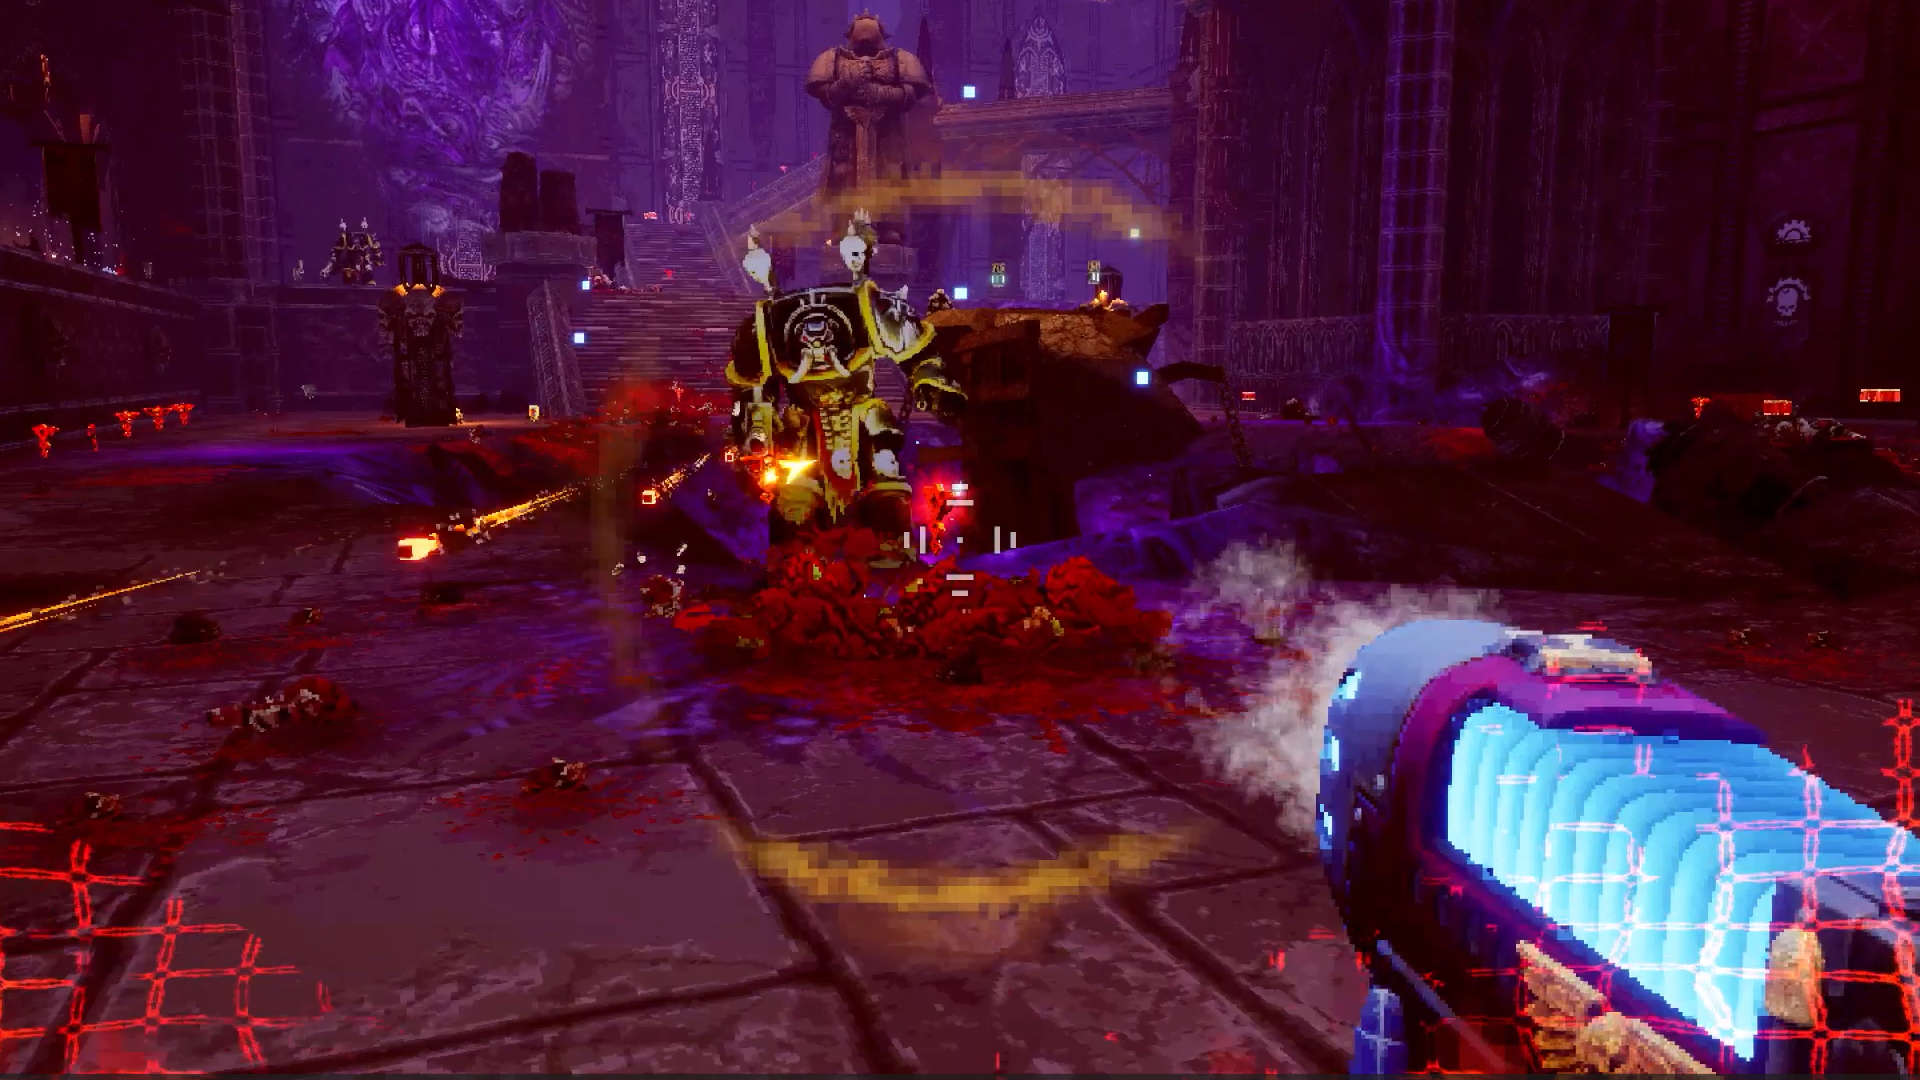 Warhammer 40k Boltgun: screenshot, the player aims a plasmagun at a chaos space marine terminator